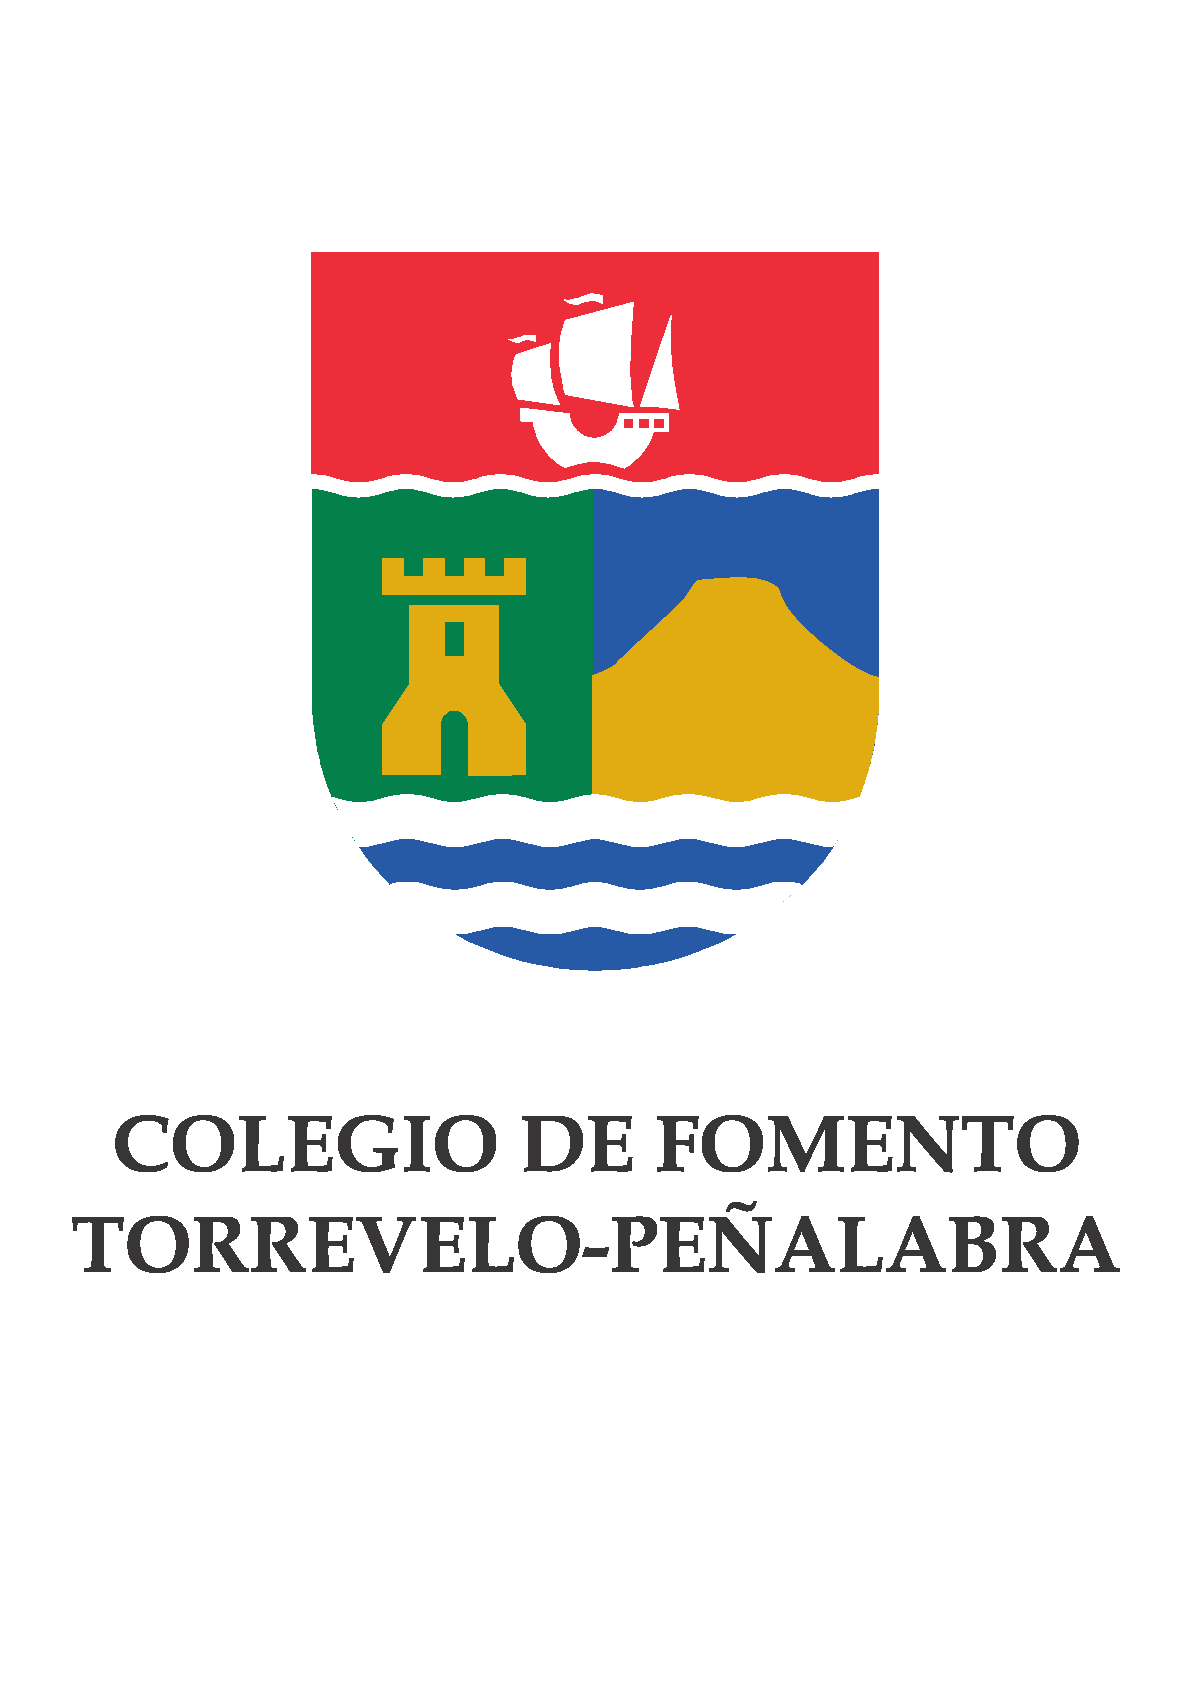 COLEGIO DE FOMENTO TORREVELO-PEÑALABRA